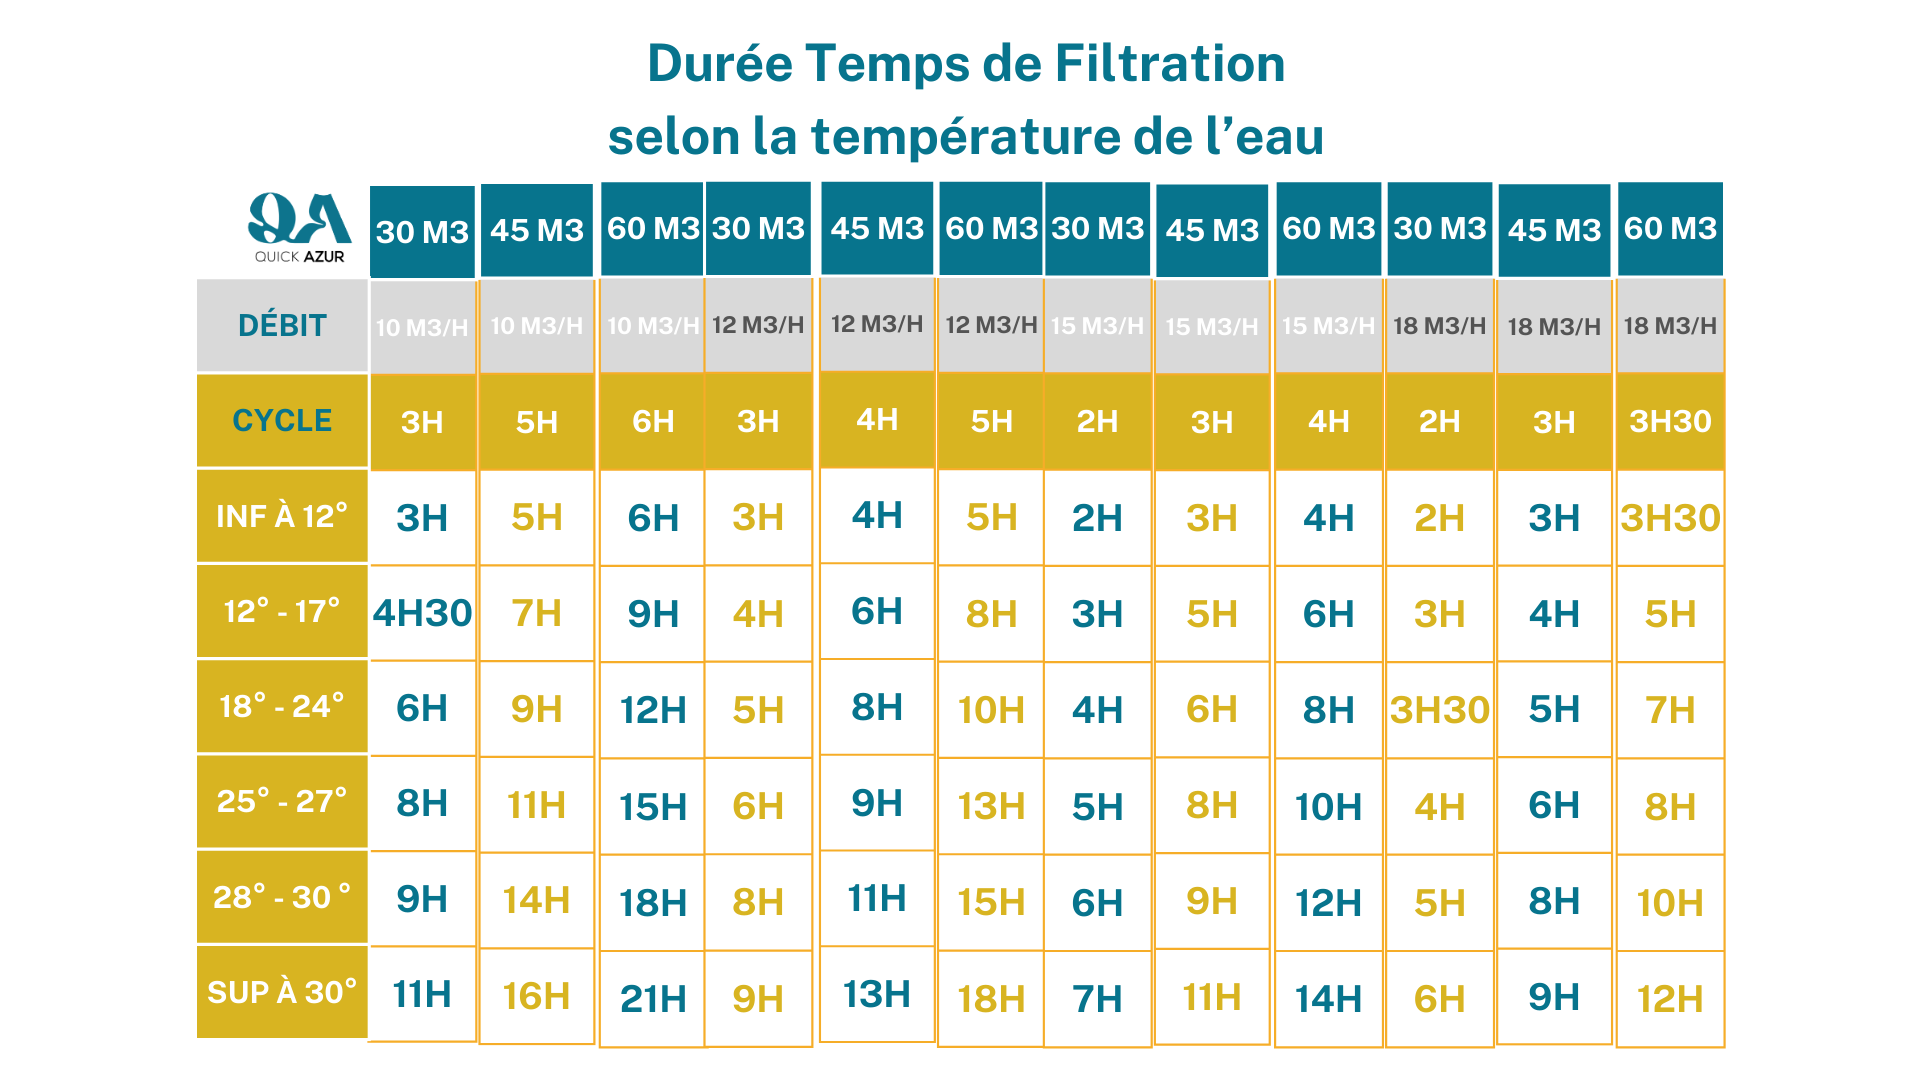 tableau durée temps de filtration selon la température de l'eau